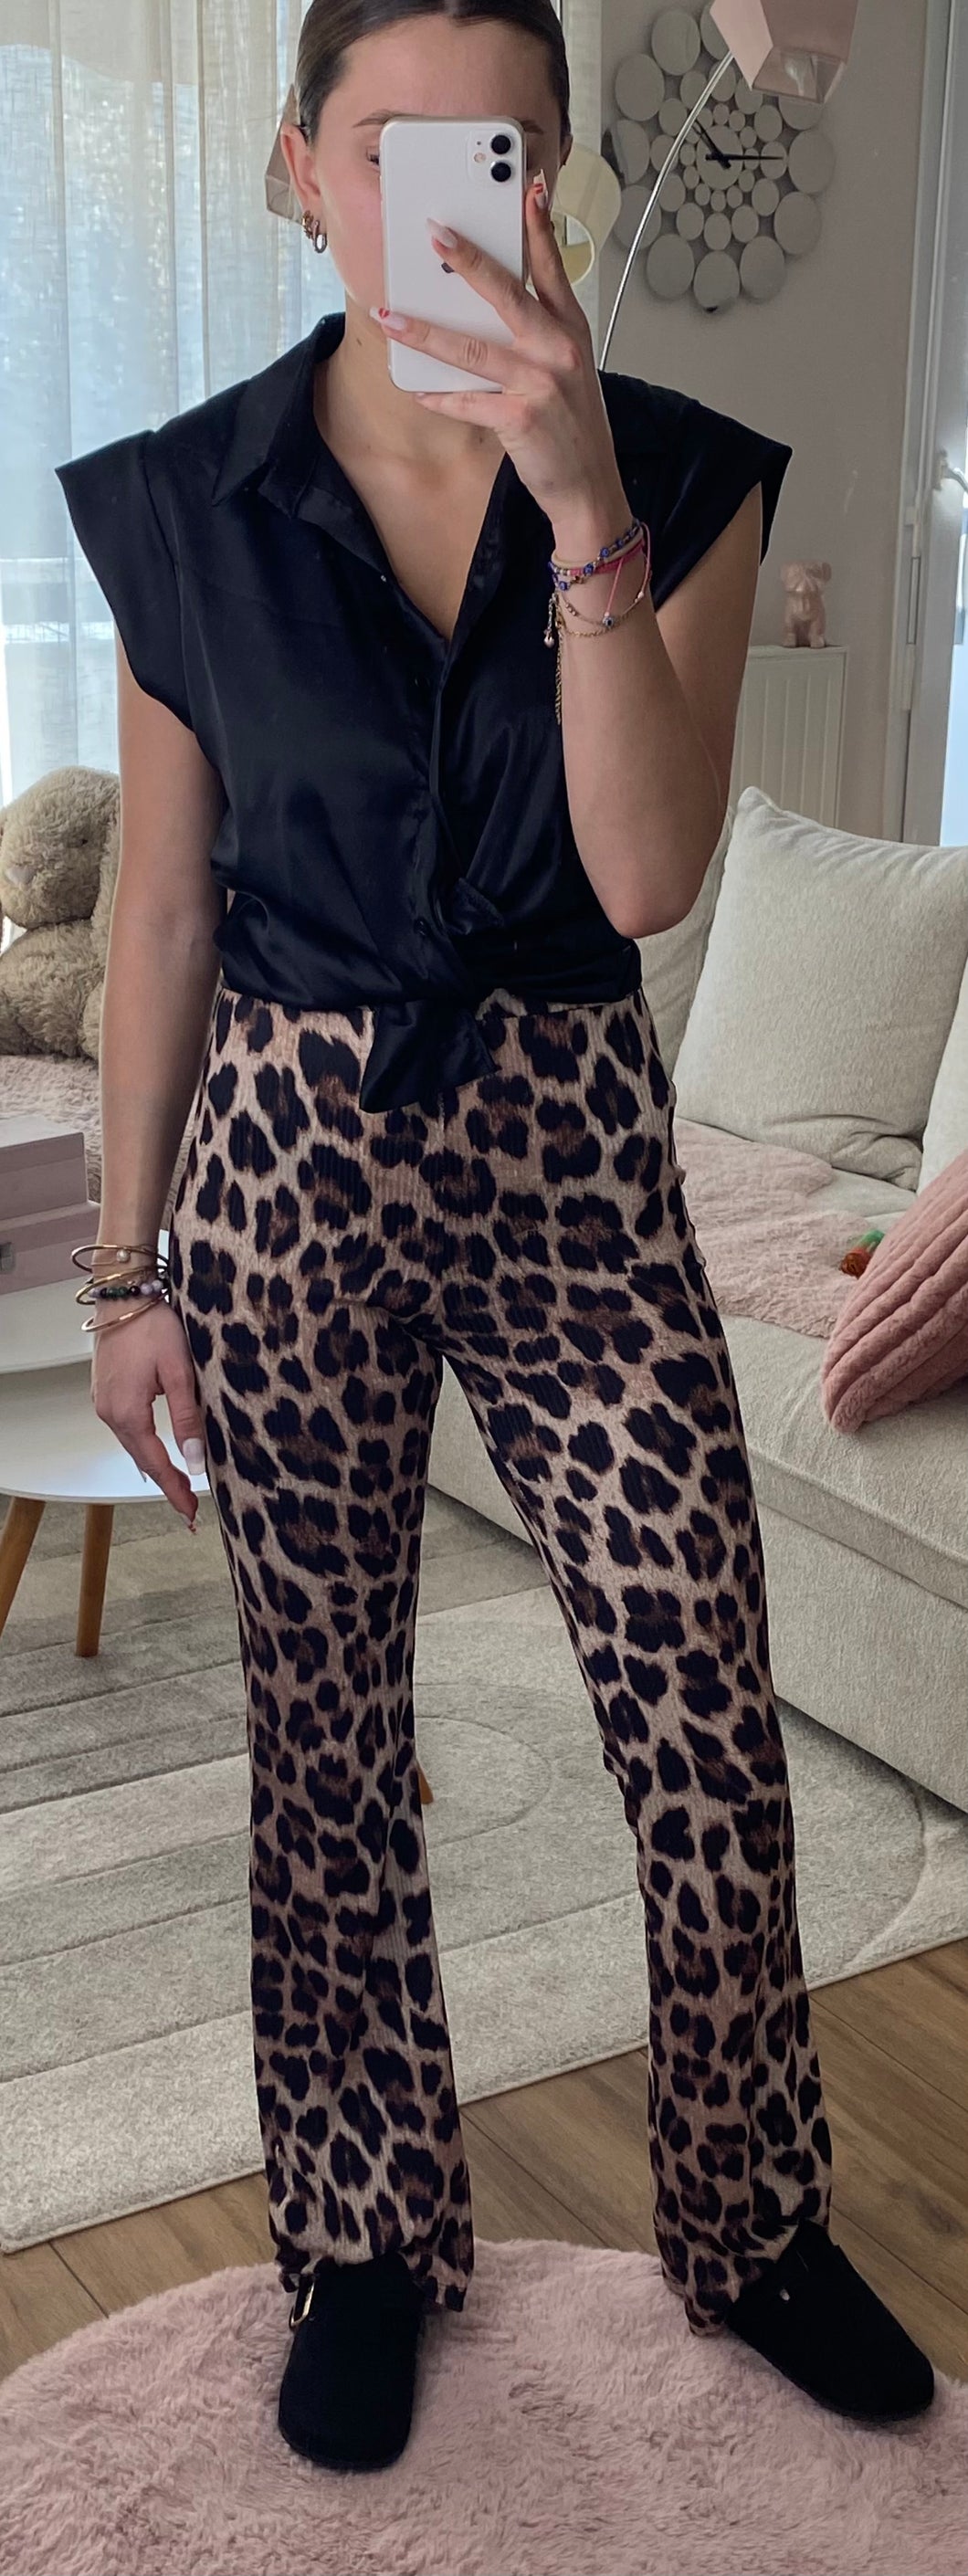 Pantalon léopard